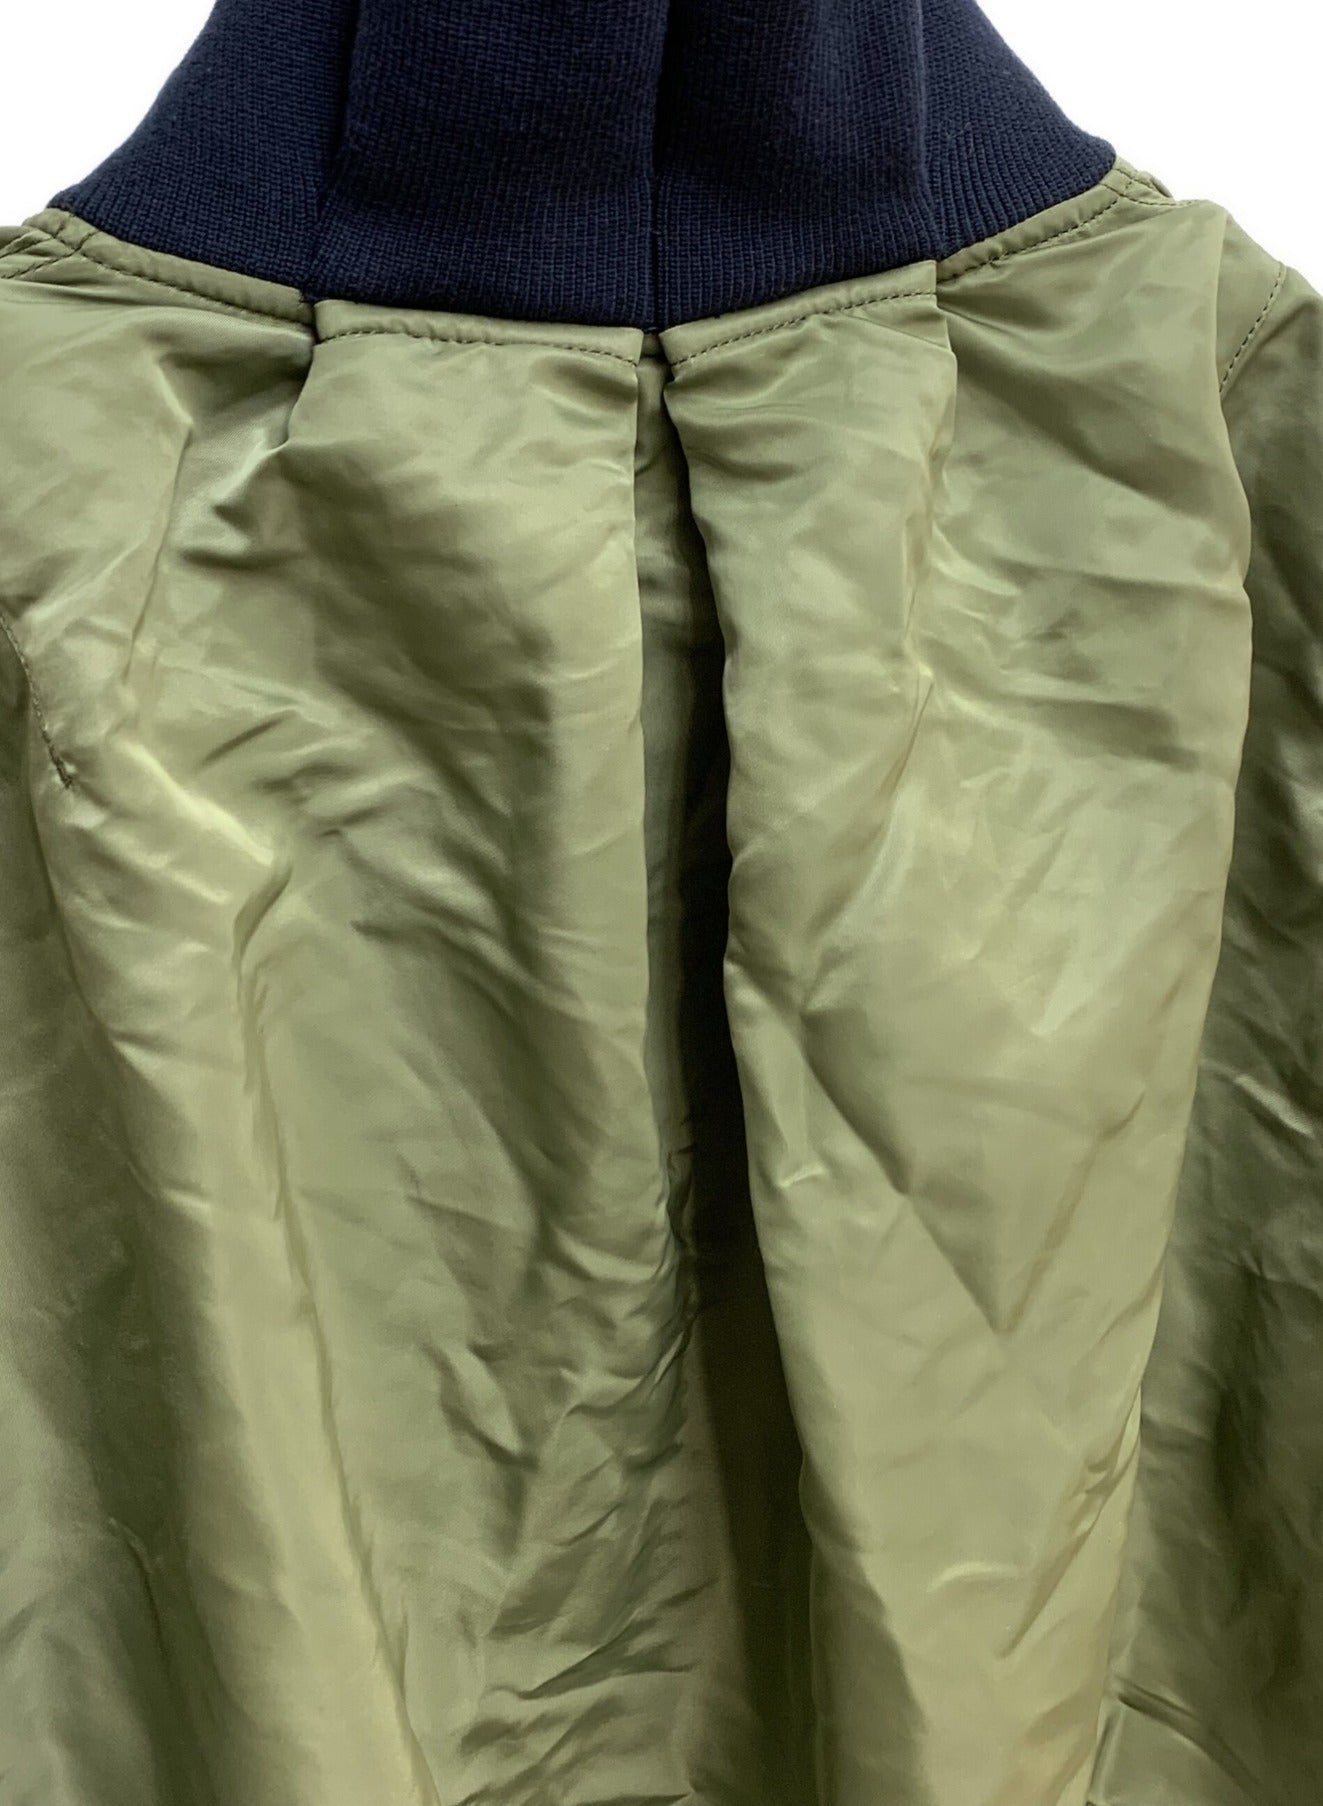 Sacai MA-1 × Melton 재킷 19-04714